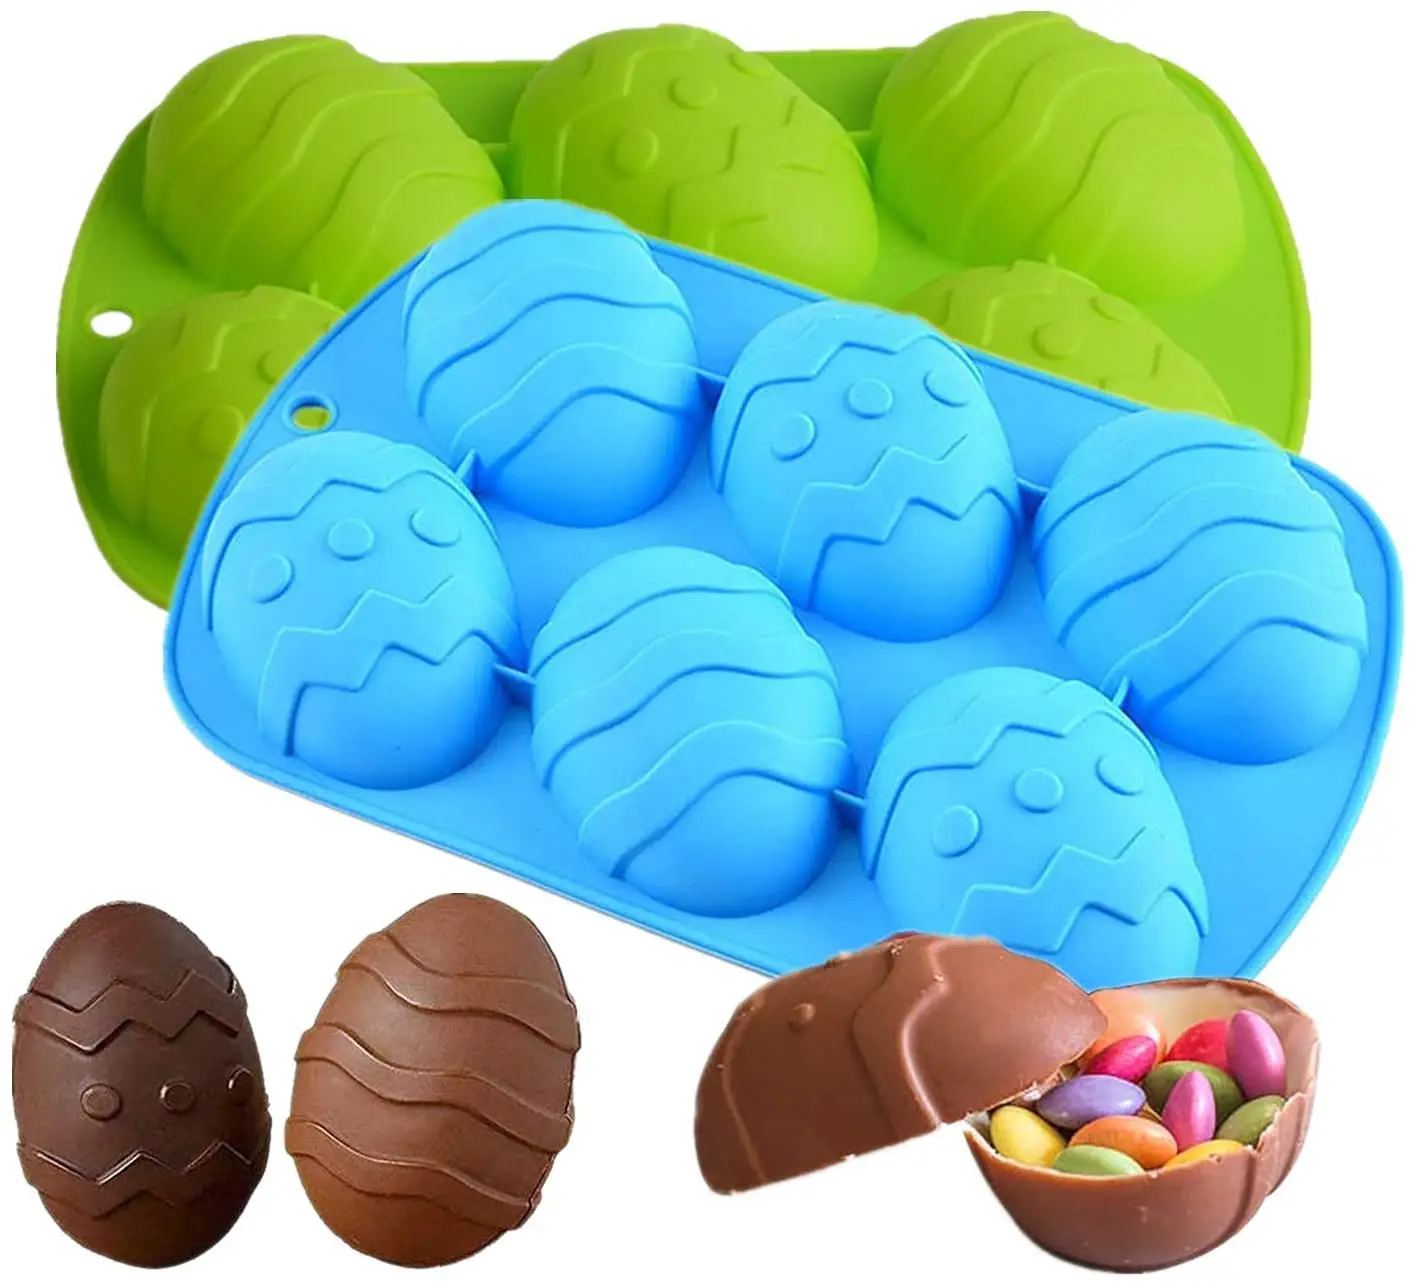 Molde de silicona 3D para decoración de tartas, pastel de Chocolate, huevo de Pascua y conejo, trufa, pudín, gelatina, postre, Pascuas